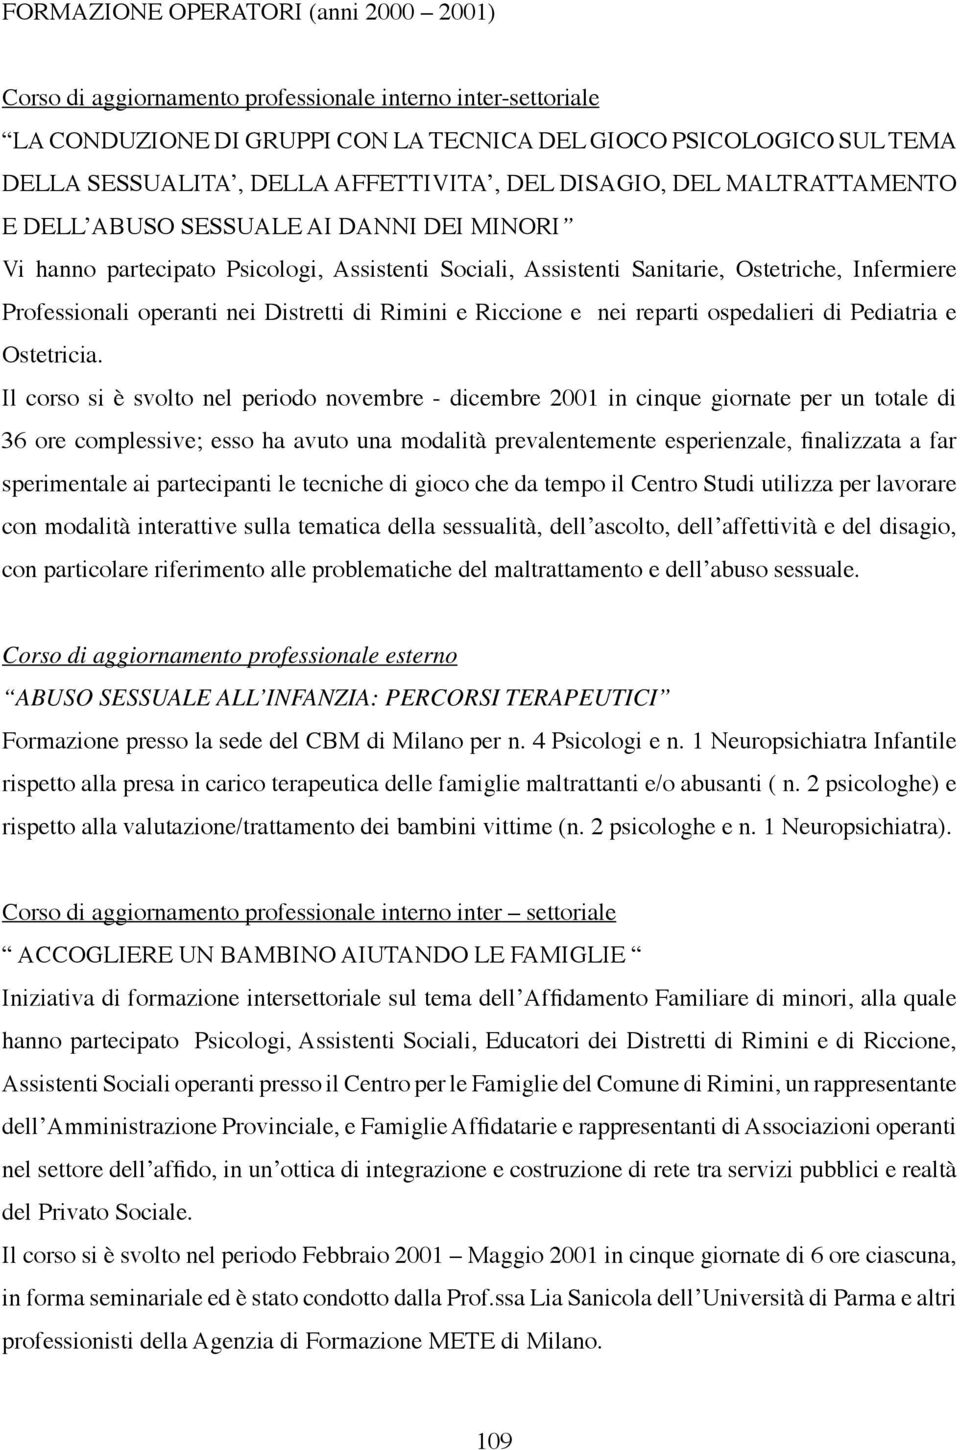 operanti nei Distretti di Rimini e Riccione e nei reparti ospedalieri di Pediatria e Ostetricia.